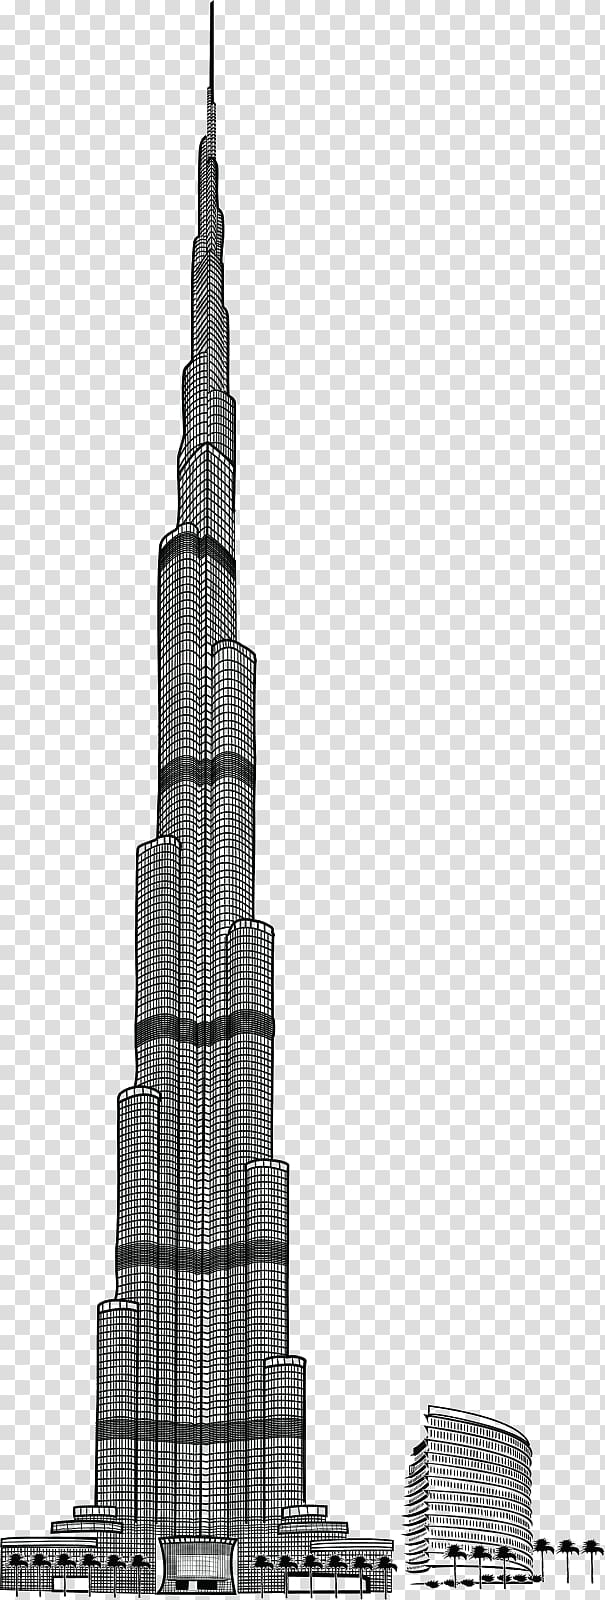 Burj Khalifa illustration, Burj Khalifa Drawing, Burj Khalifa Pic transparent background PNG clipart